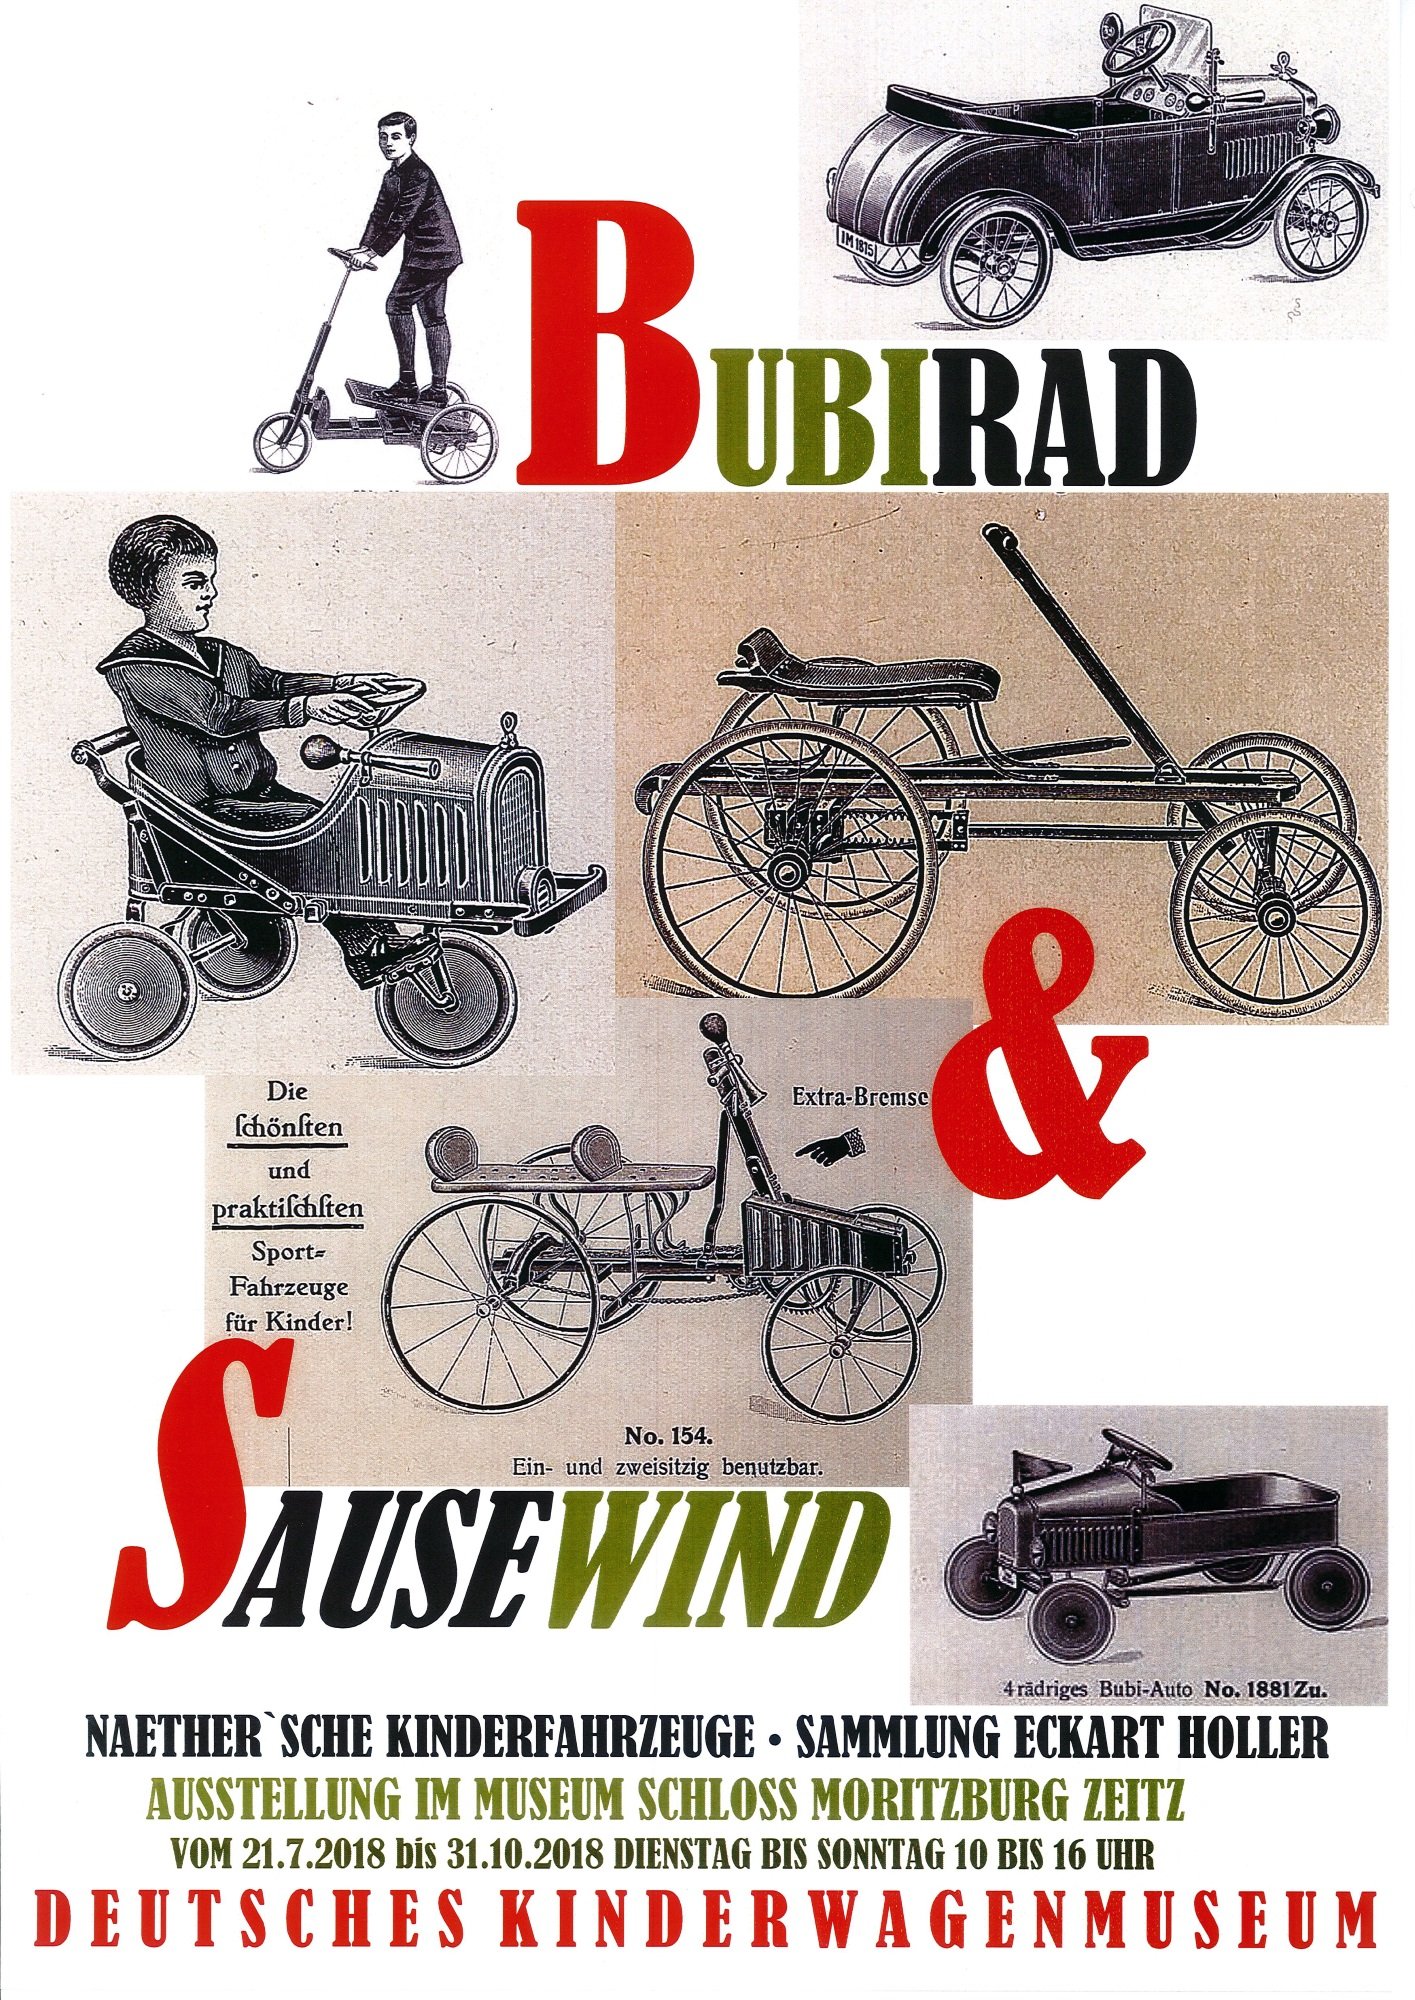 Plakat "Bubirad & Sausewind" (Museum Schloss Moritzburg Zeitz RR-R)